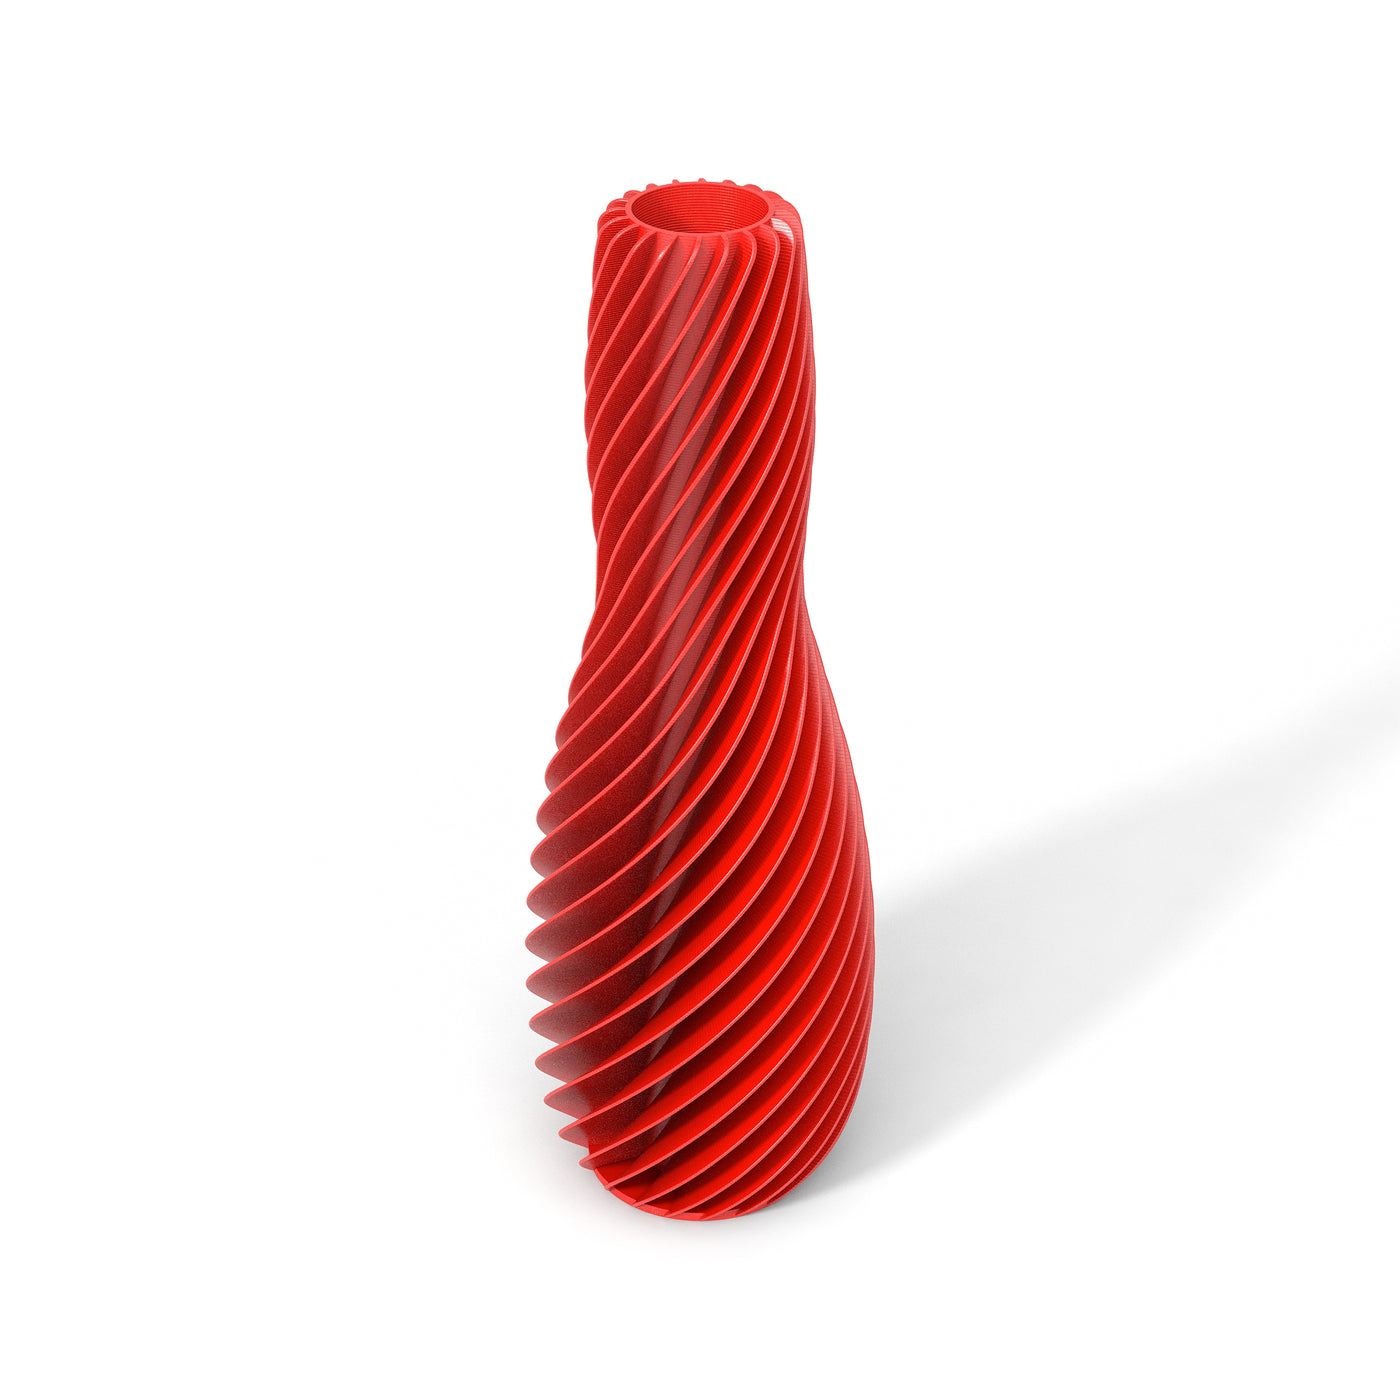 Červená designová váza 3D print SPIRAL 4